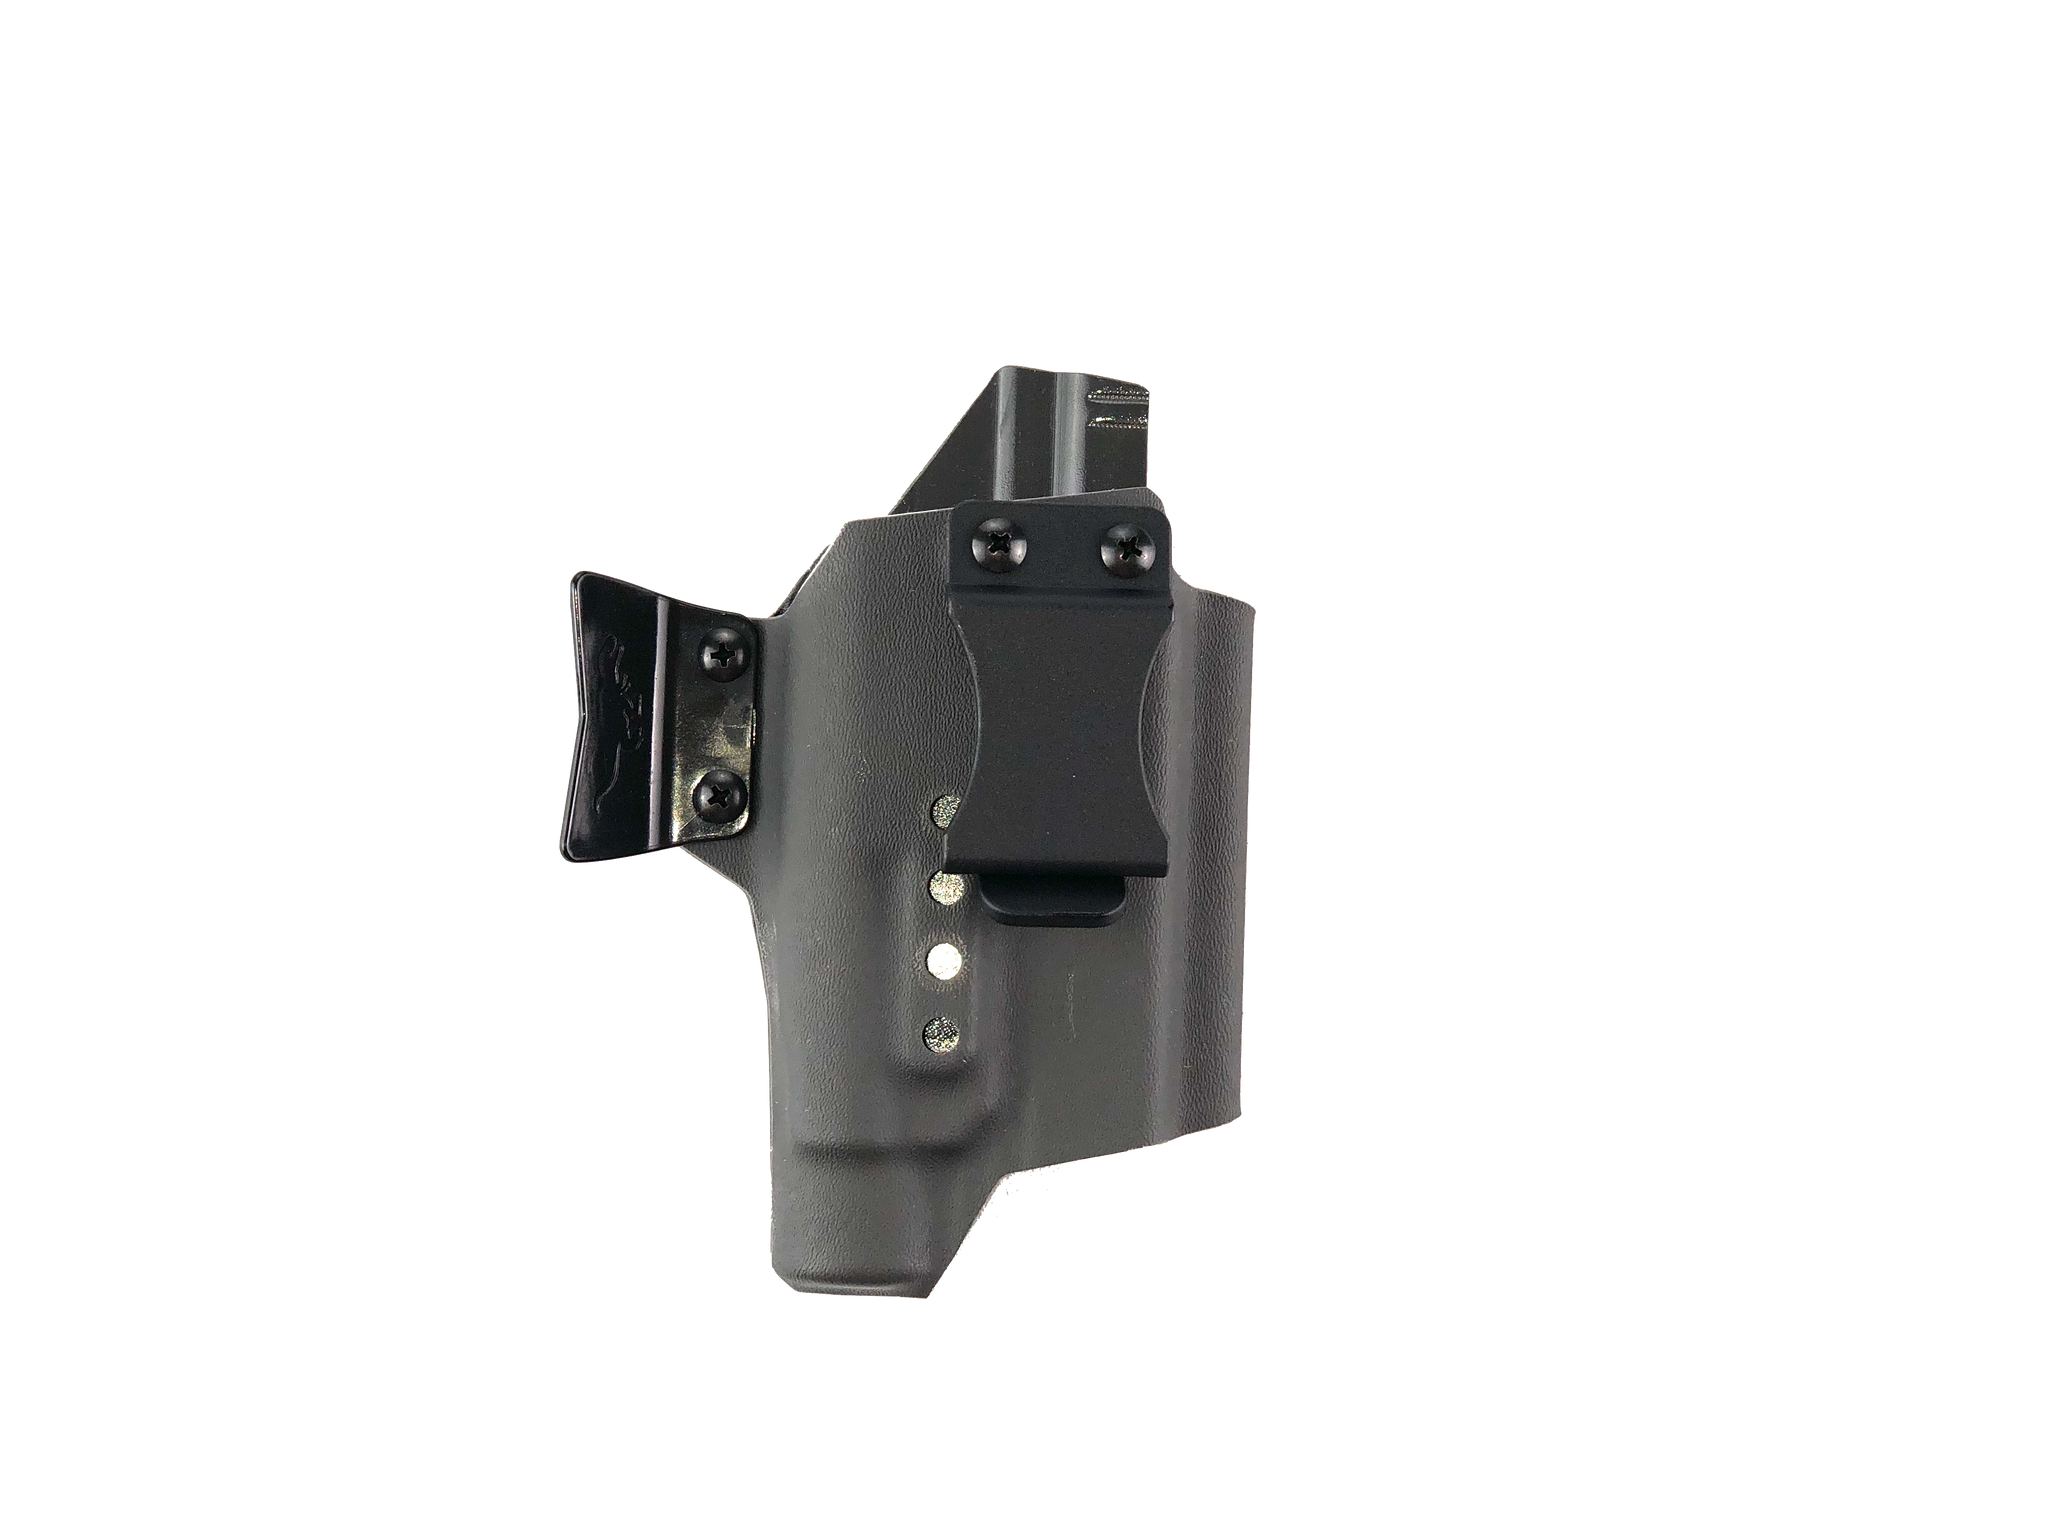 TREX Arms Raptor Glock 19 w TLR-1 – The Wild Gunner